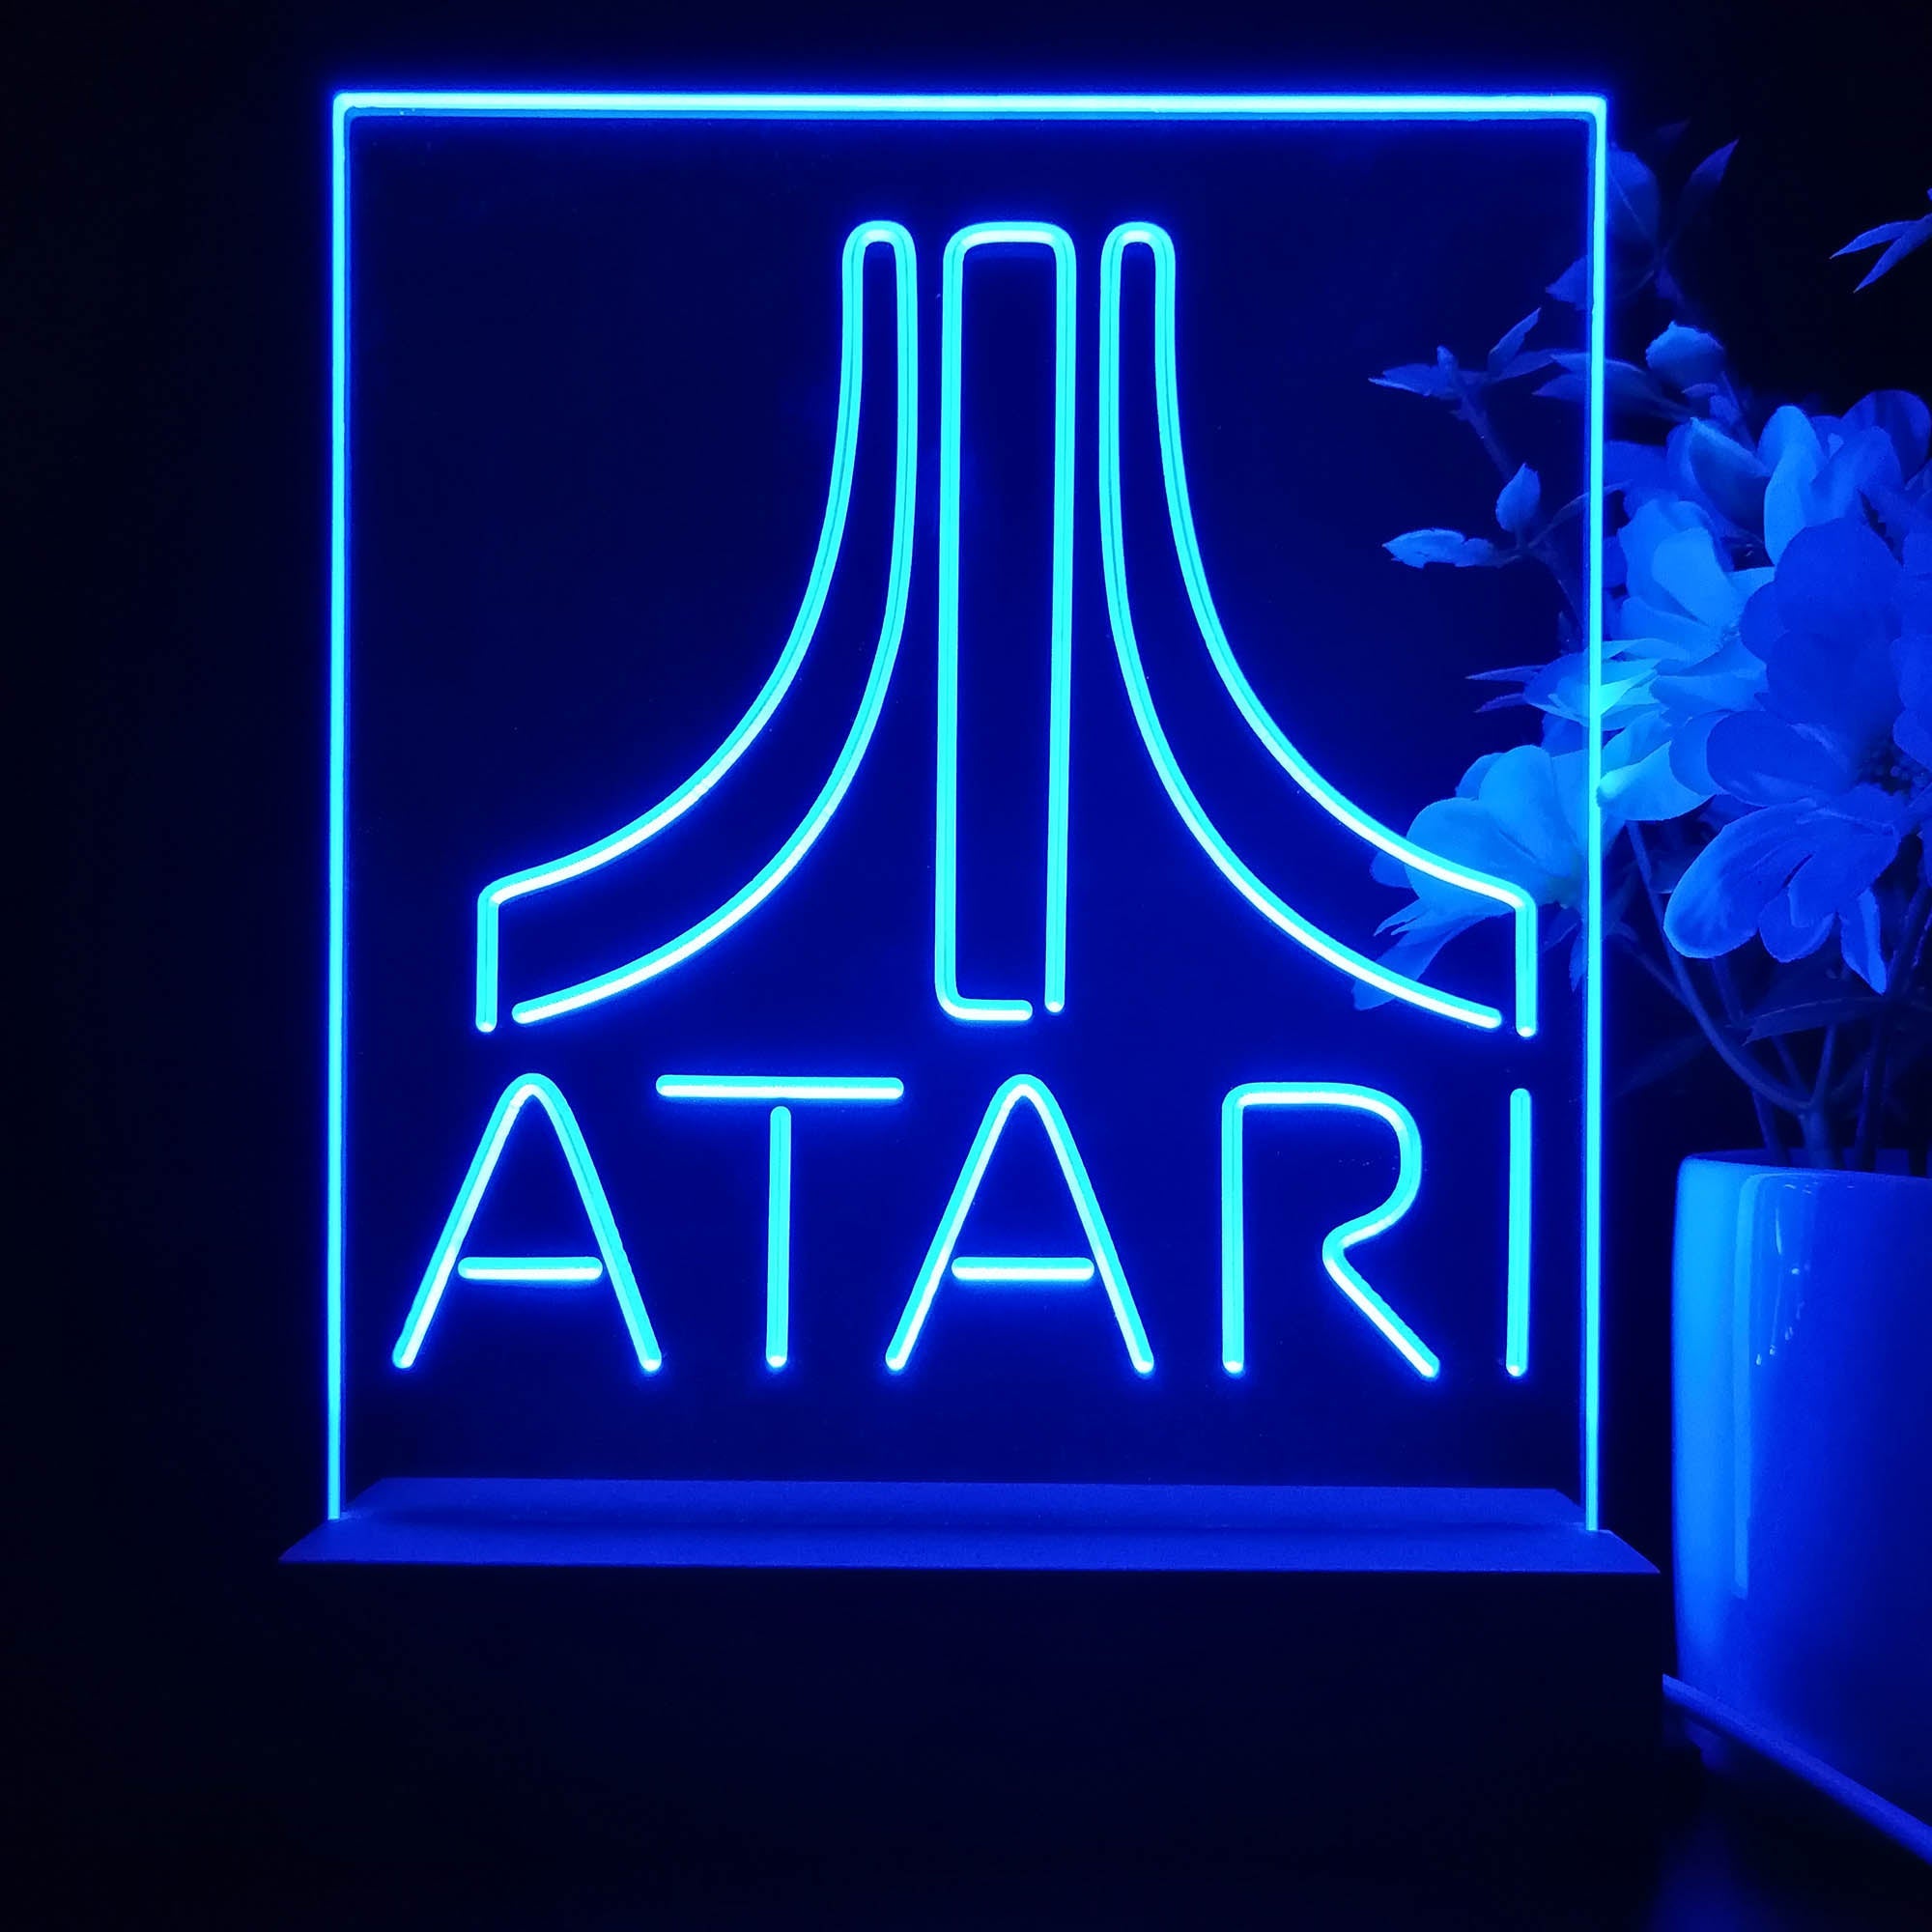 Atari Arcade Game Room LED Sign Lamp Display